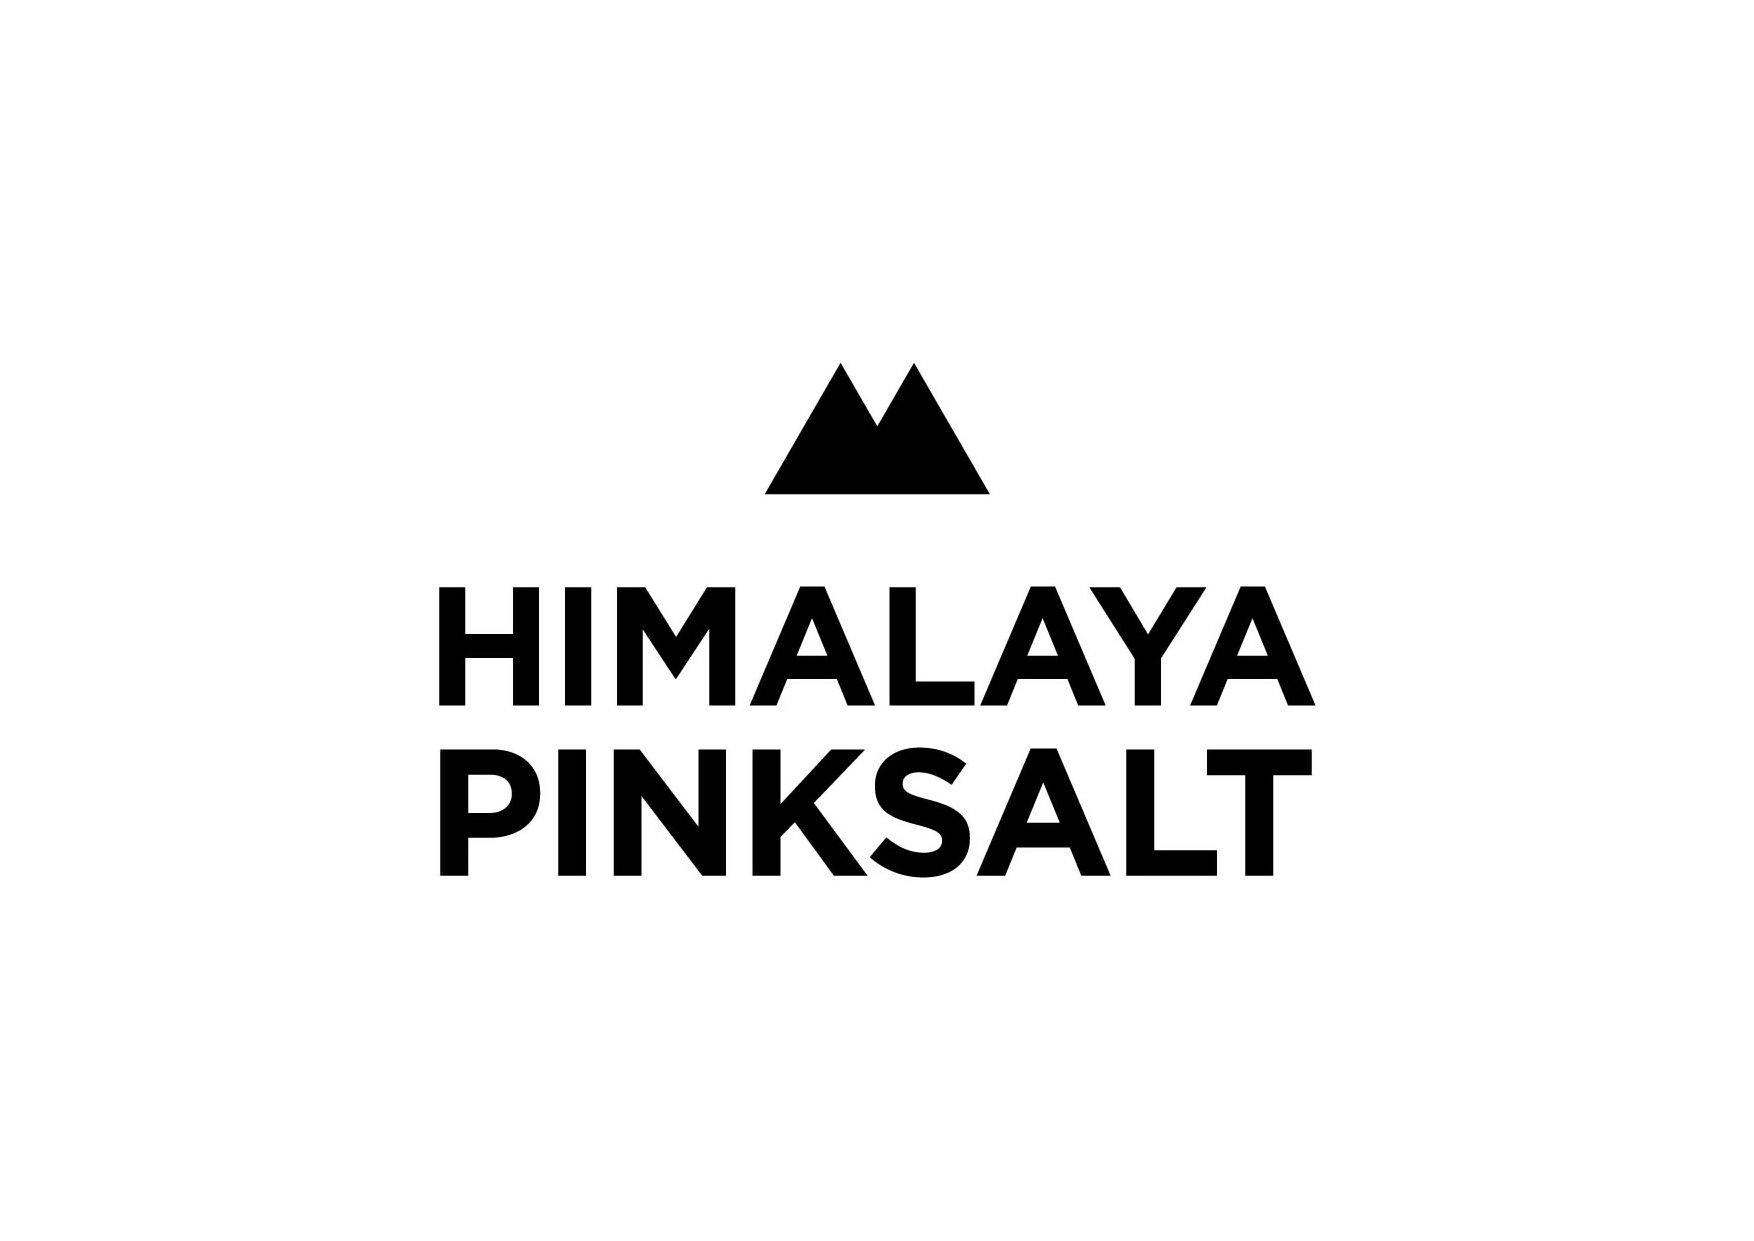  HIMALAYA PINKSALT